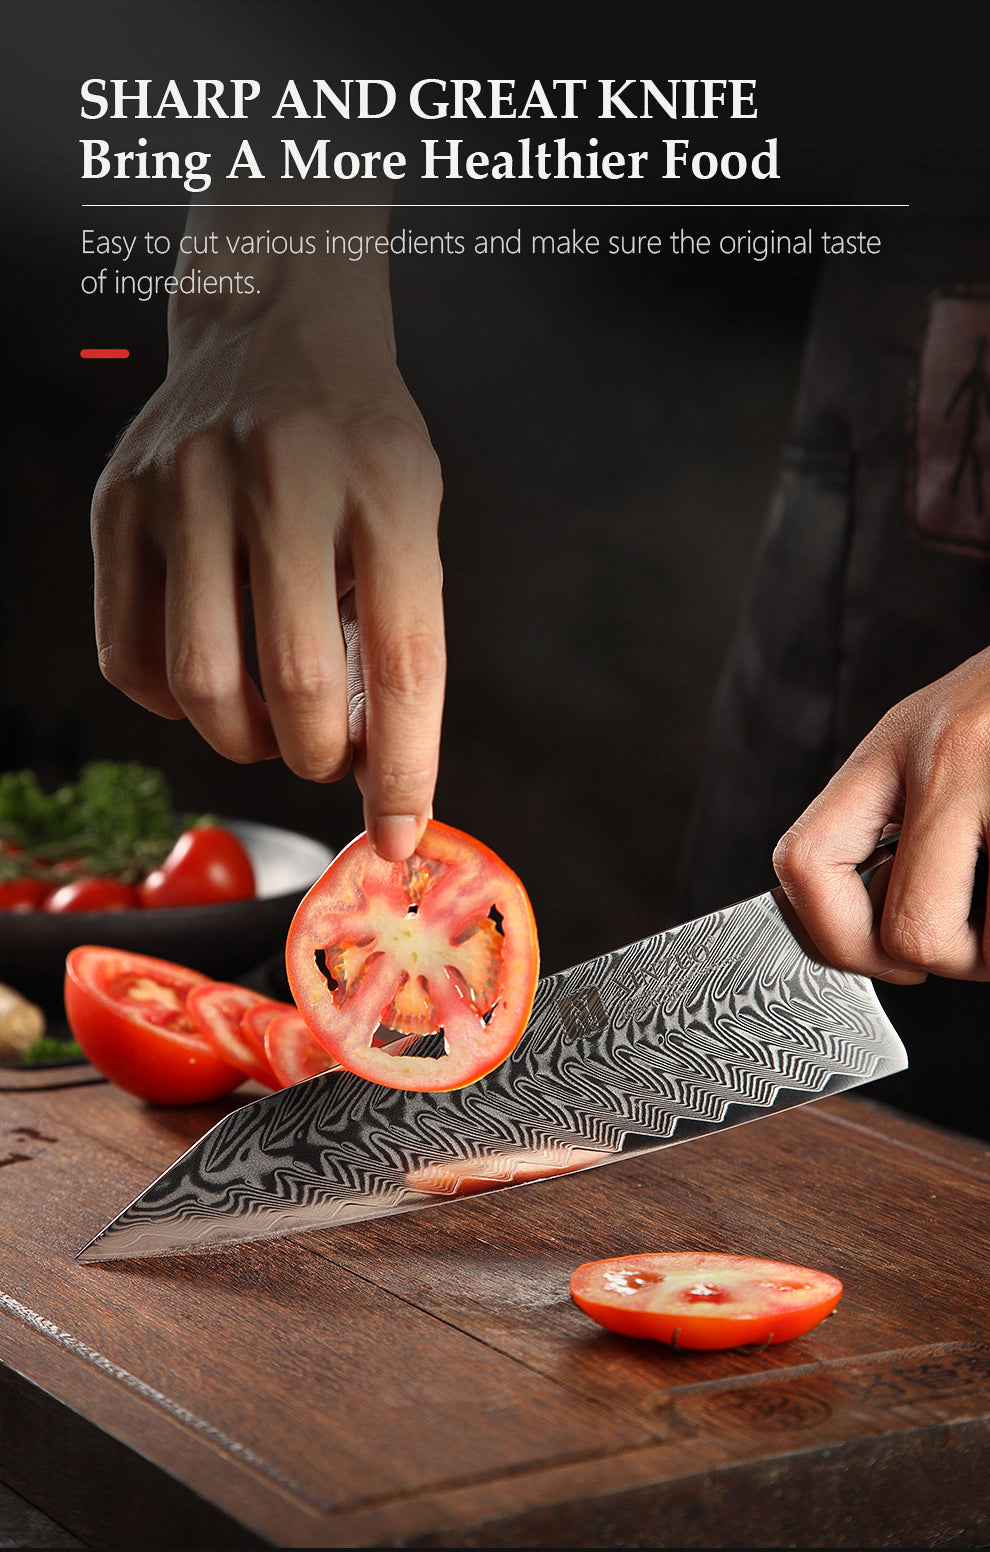 5 Pcs Professional Kitchen Knife Set 67 Layers